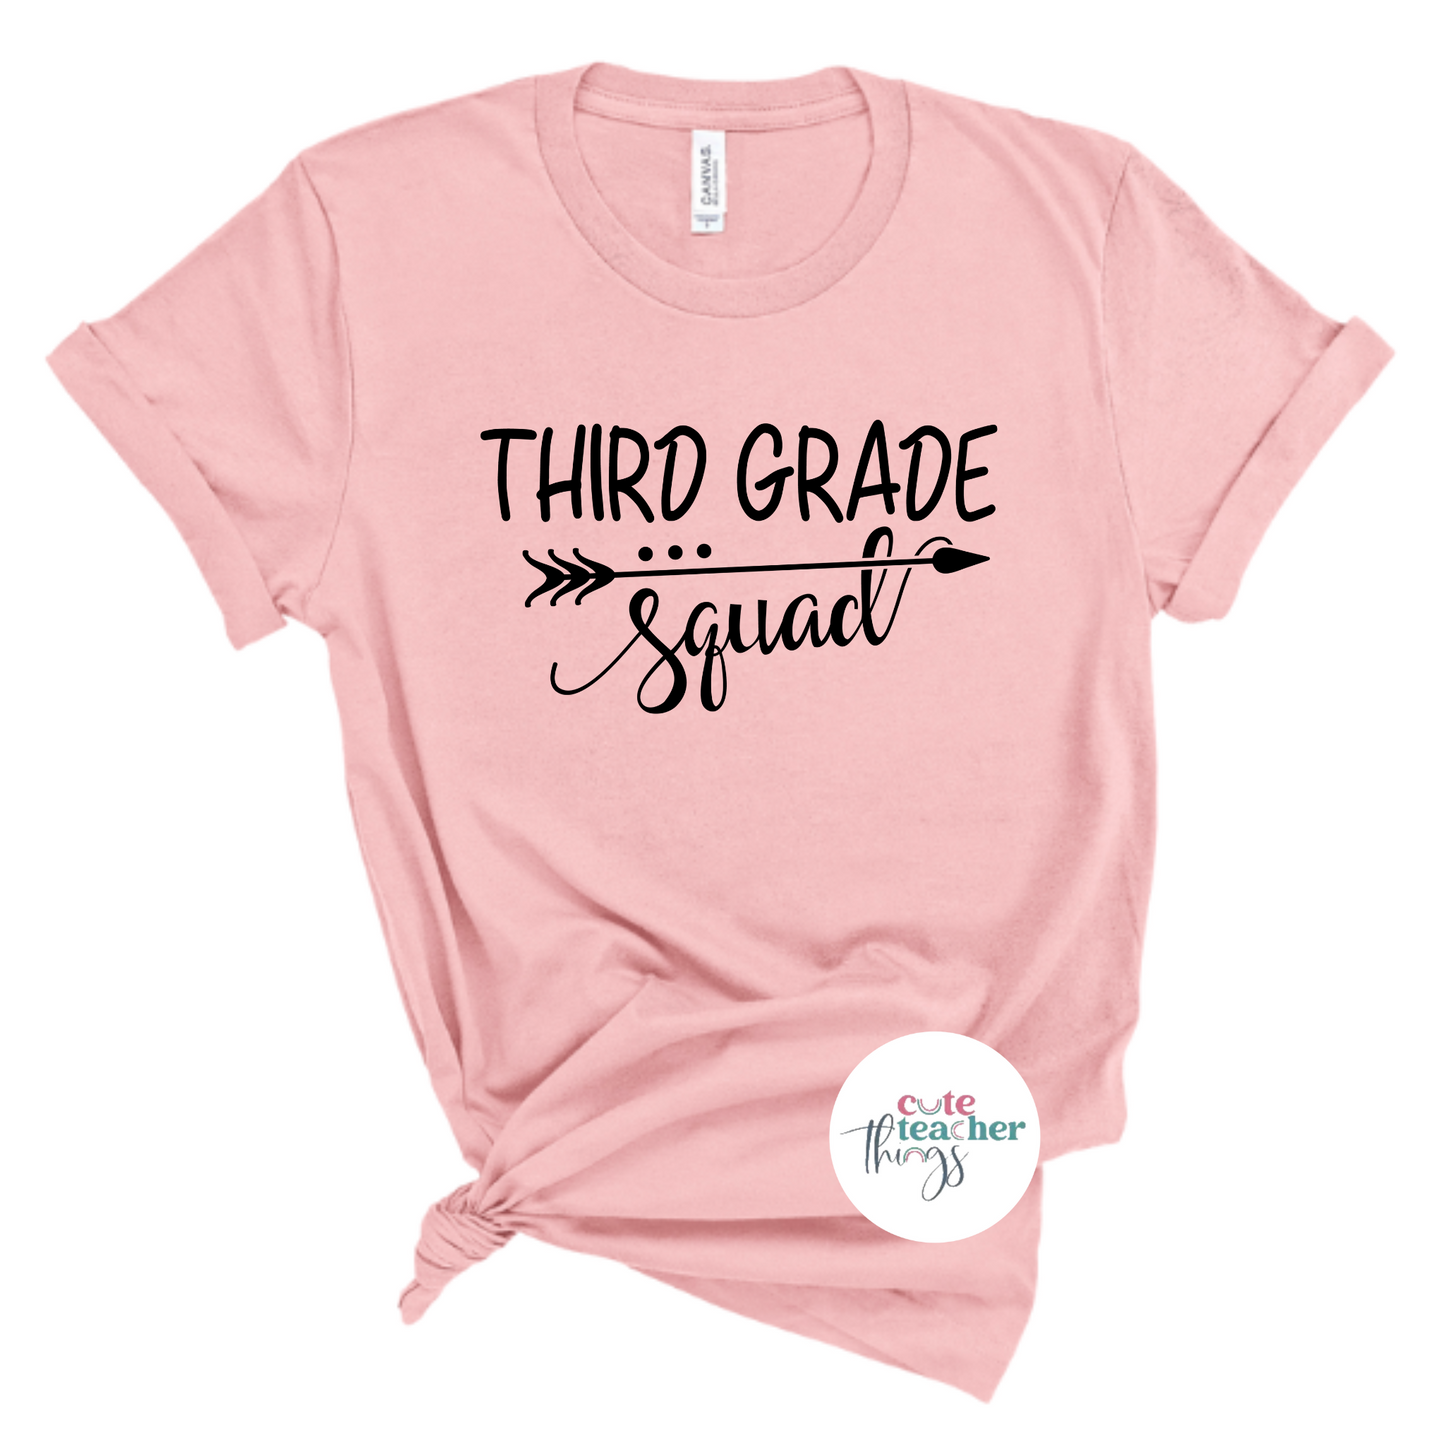 first day of school shirt, affirmation t-shirt, gift idea for third grade teachers